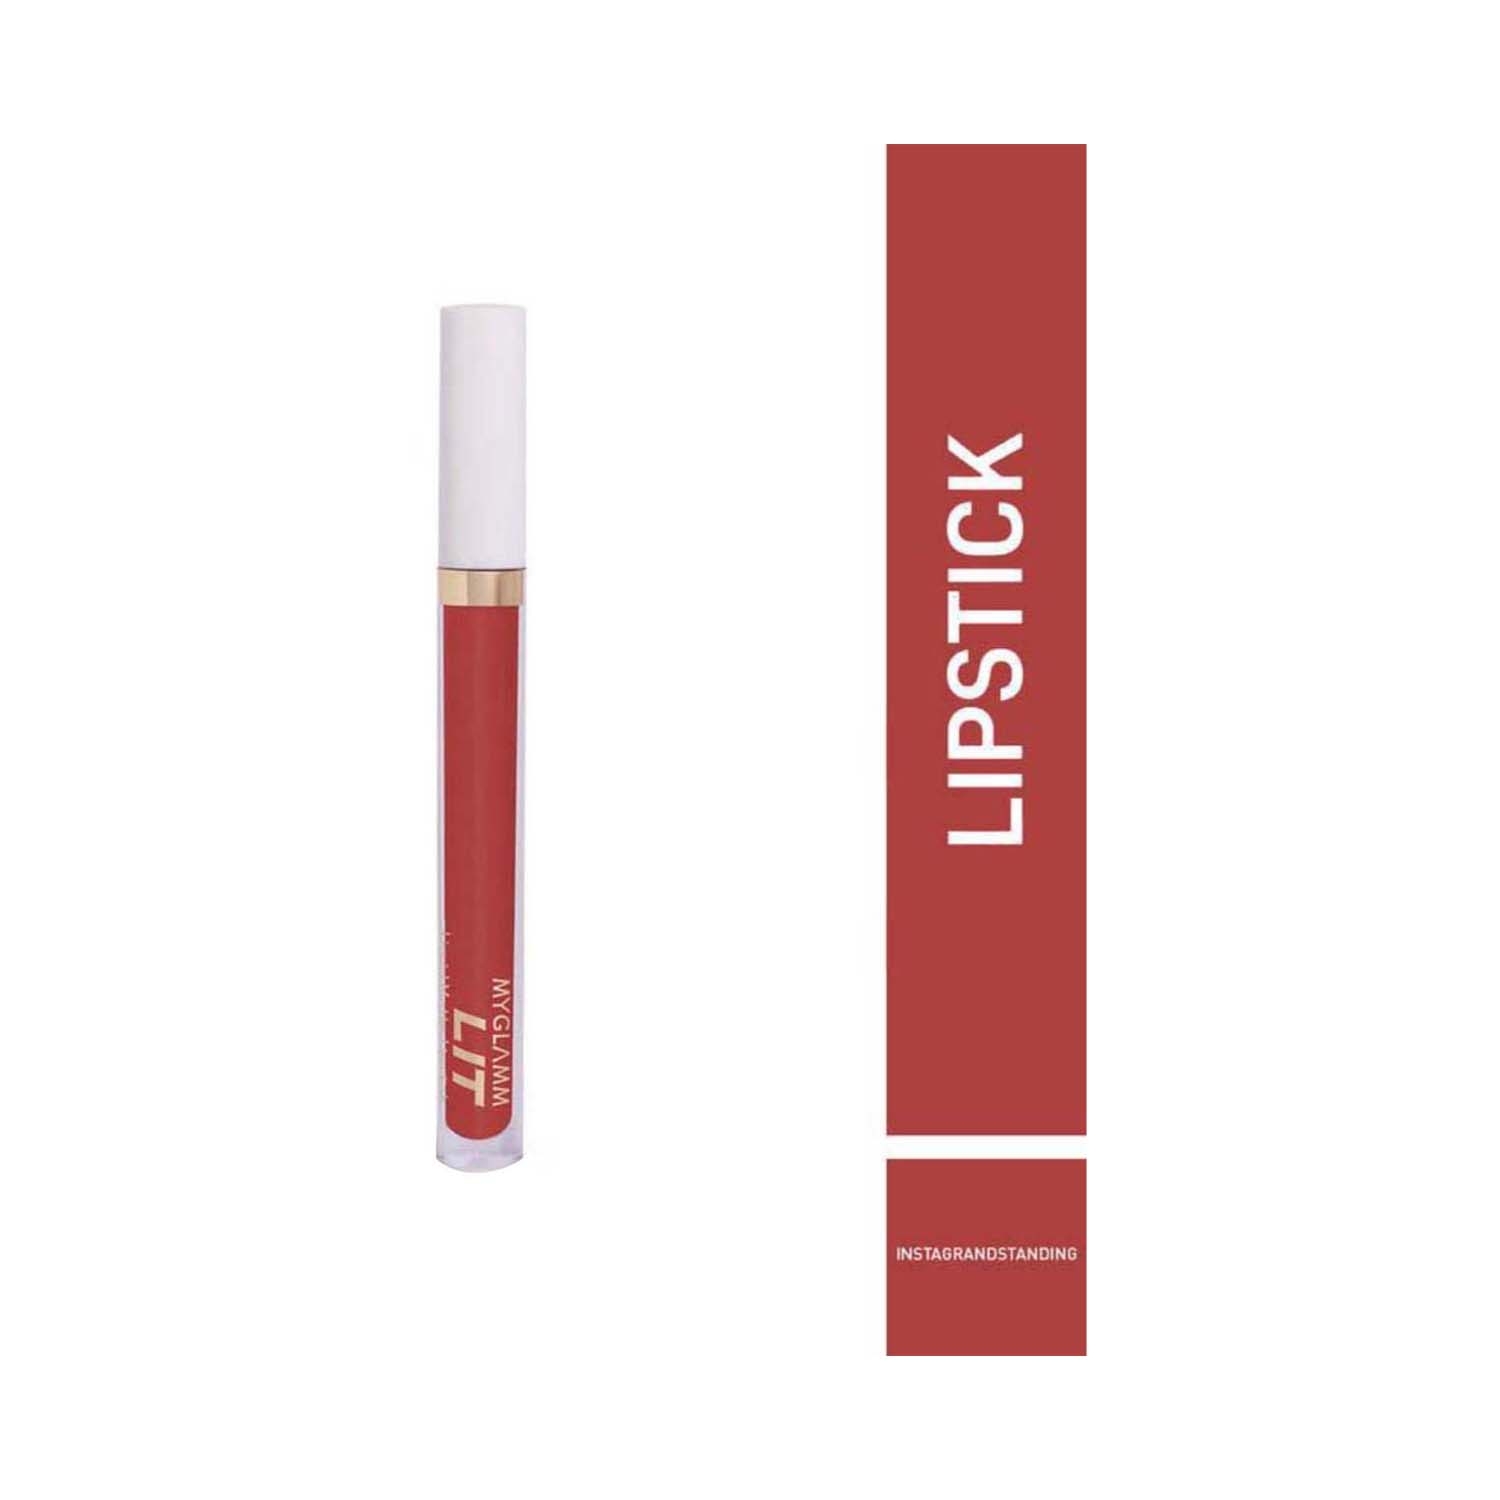 MyGlamm | MyGlamm LIT Liquid Matte Lipstick - Insta Grandstanding (3ml)